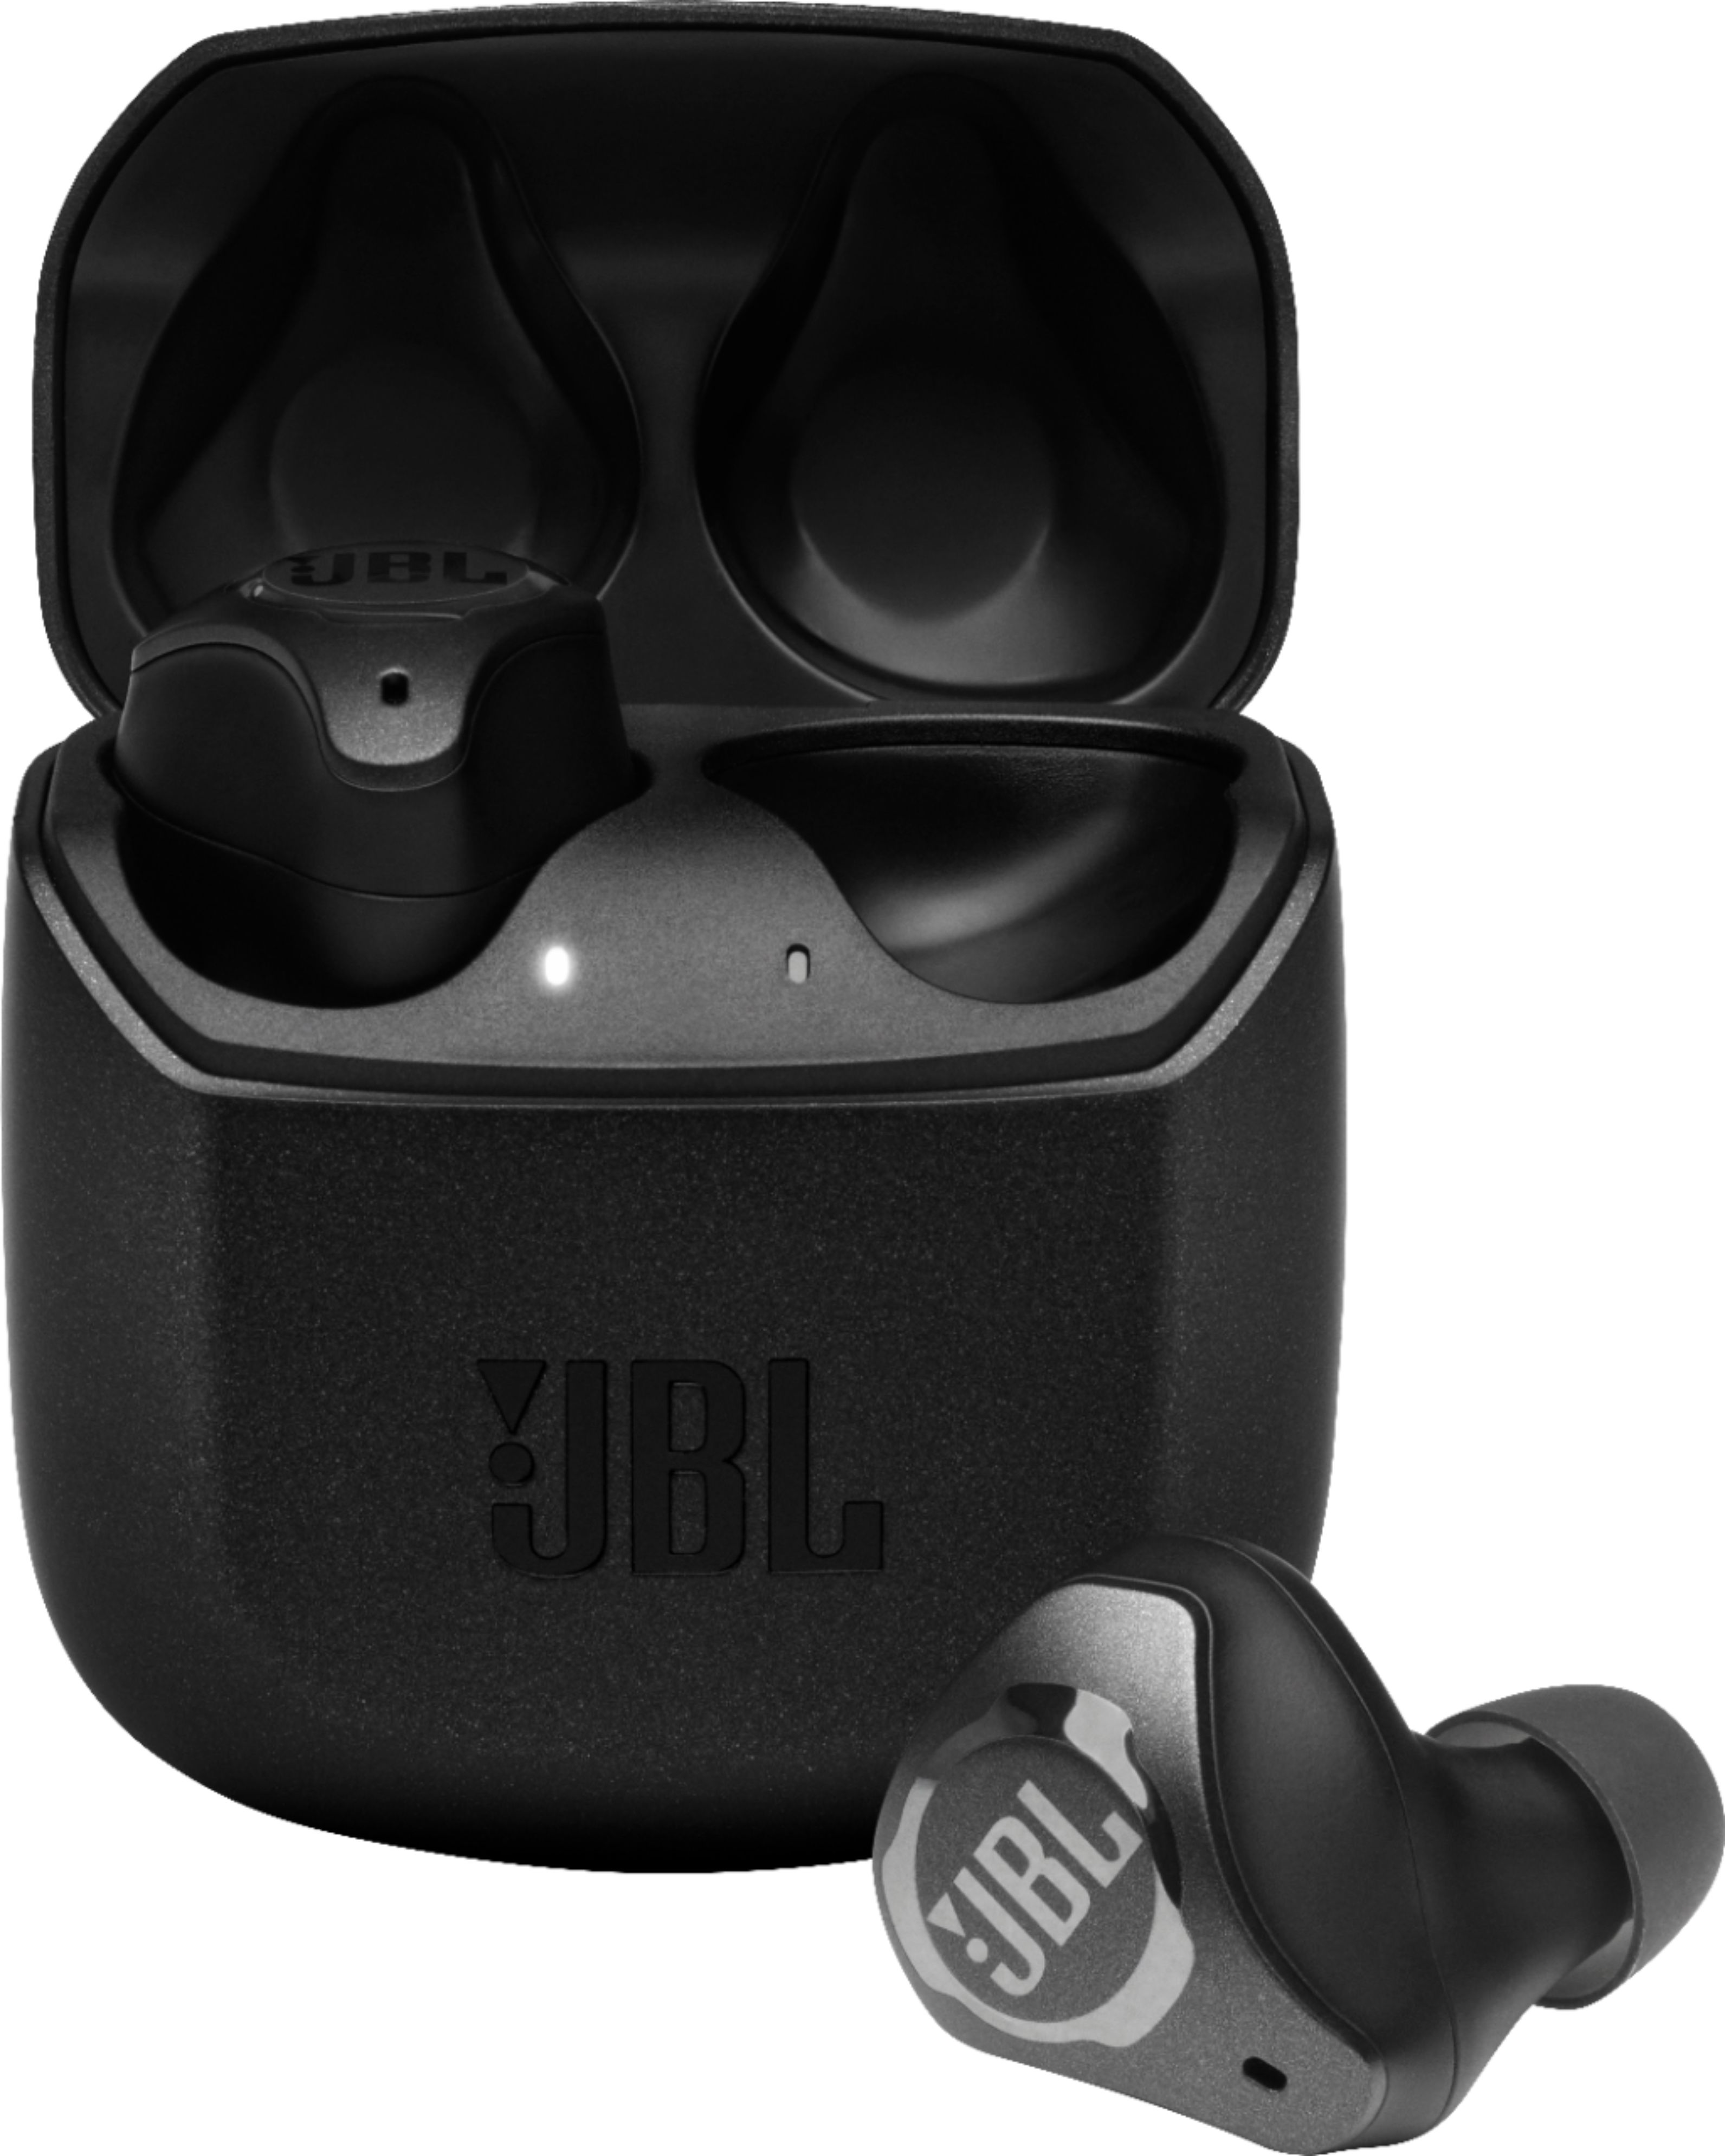 Angle View: JBL - Club Pro+ NC True Wireless Headphone - Black